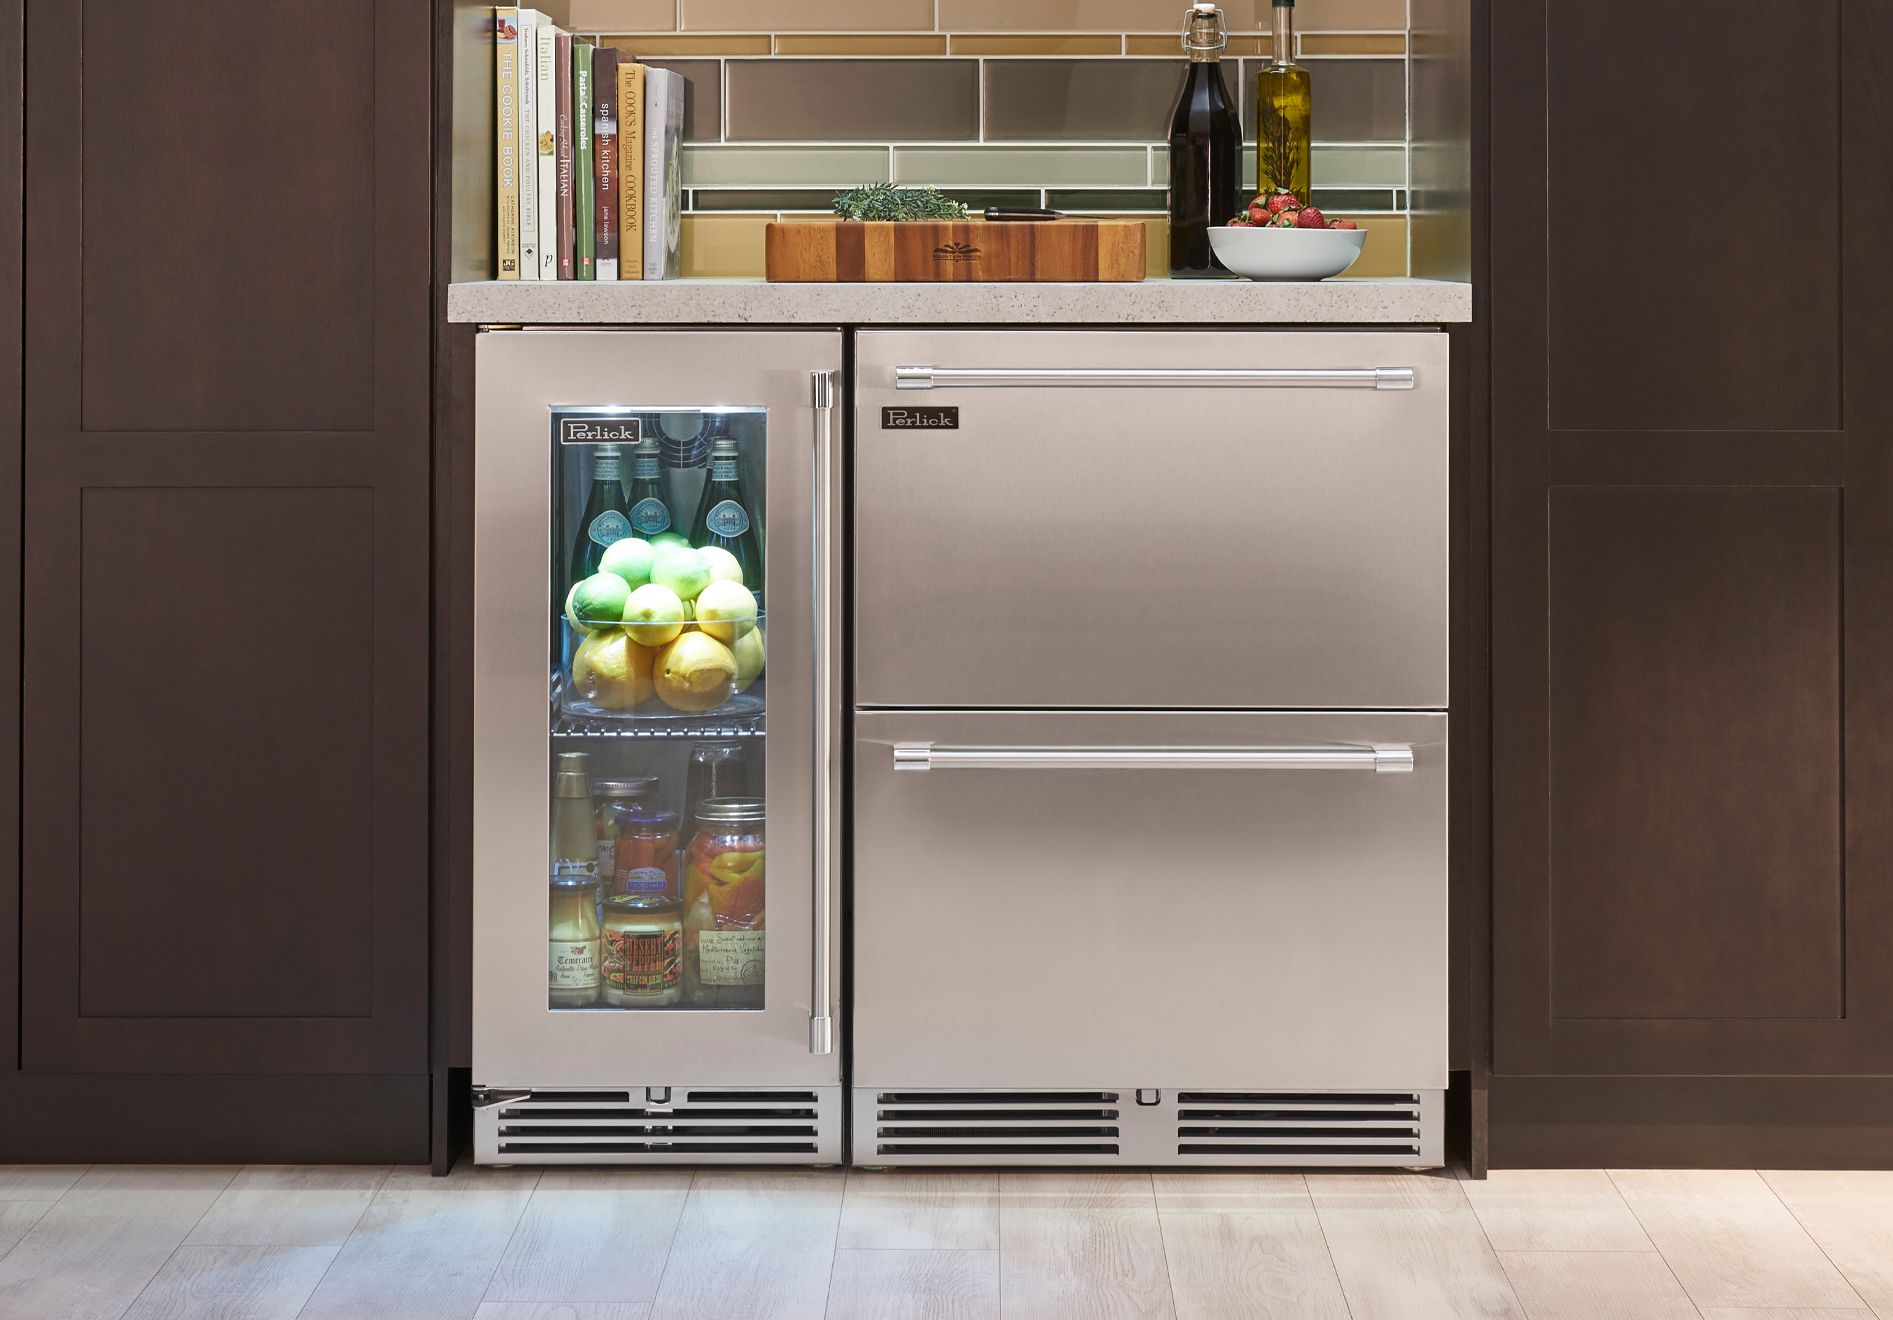 Perlick - 15" Signature Series Indoor Refrigerator with stainless steel glass door,  - HP15RS-4